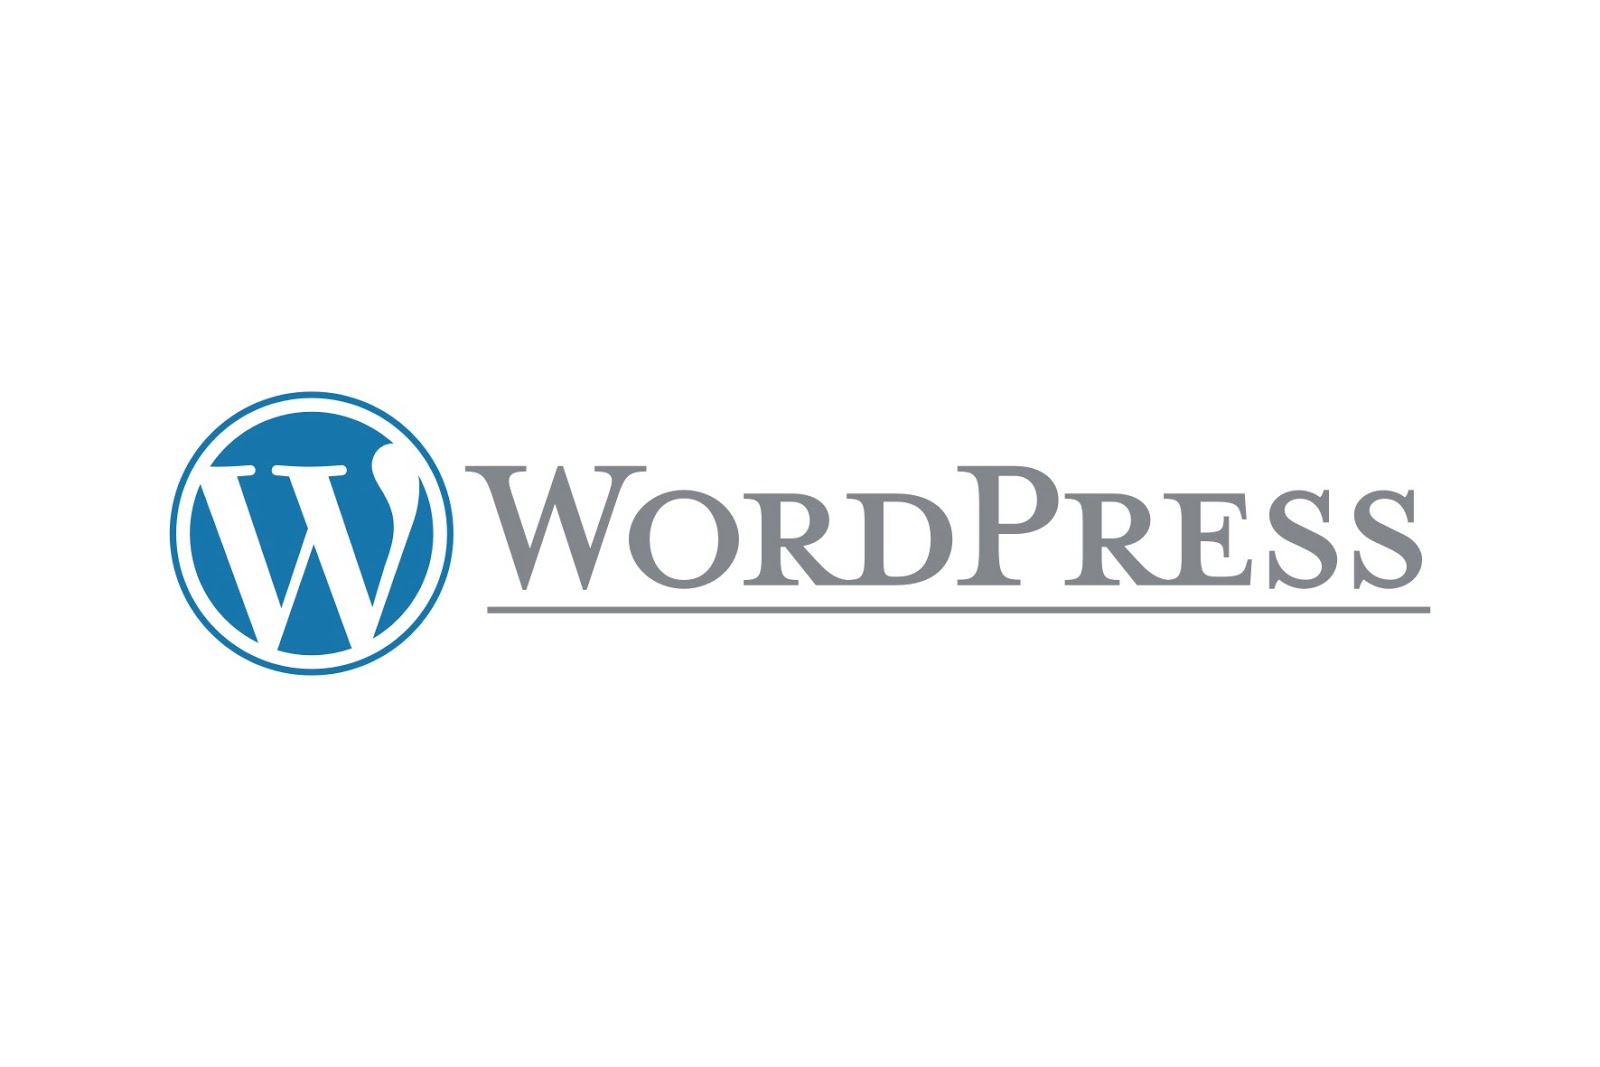 Разработка на wordpress. WORDPRESS. WORDPRESS лого. Cms WORDPRESS логотип. Вордпресс картинки.